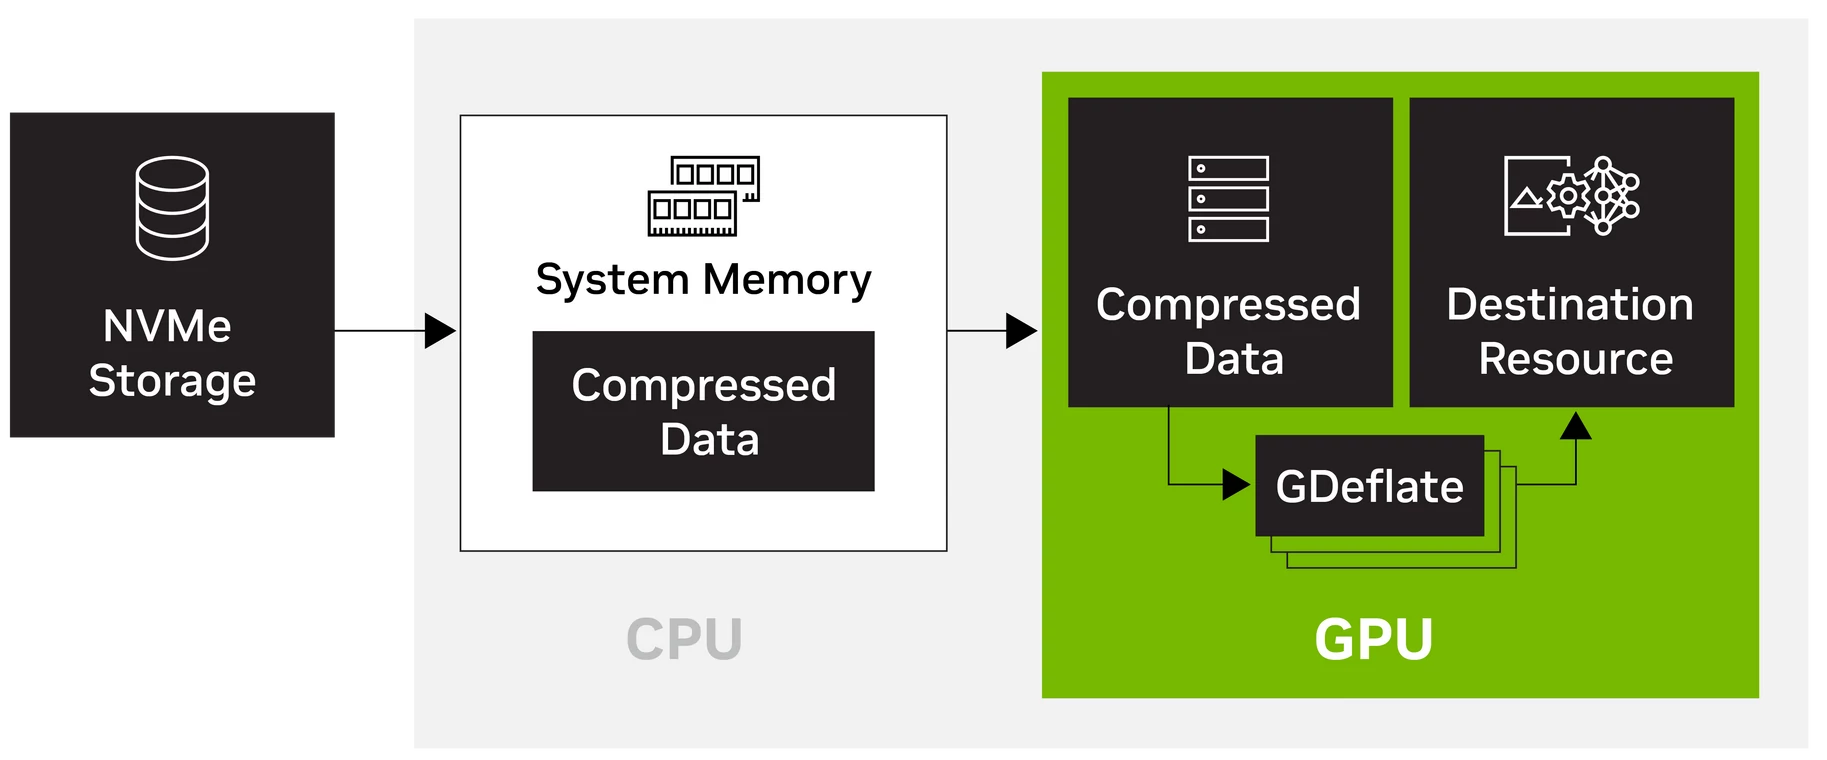 DirectStorage od wersji 1.1 pozwala dekompresować na GPU dane pobrane z nośnika, co znacznie przyspiesza proces ich ładowania.